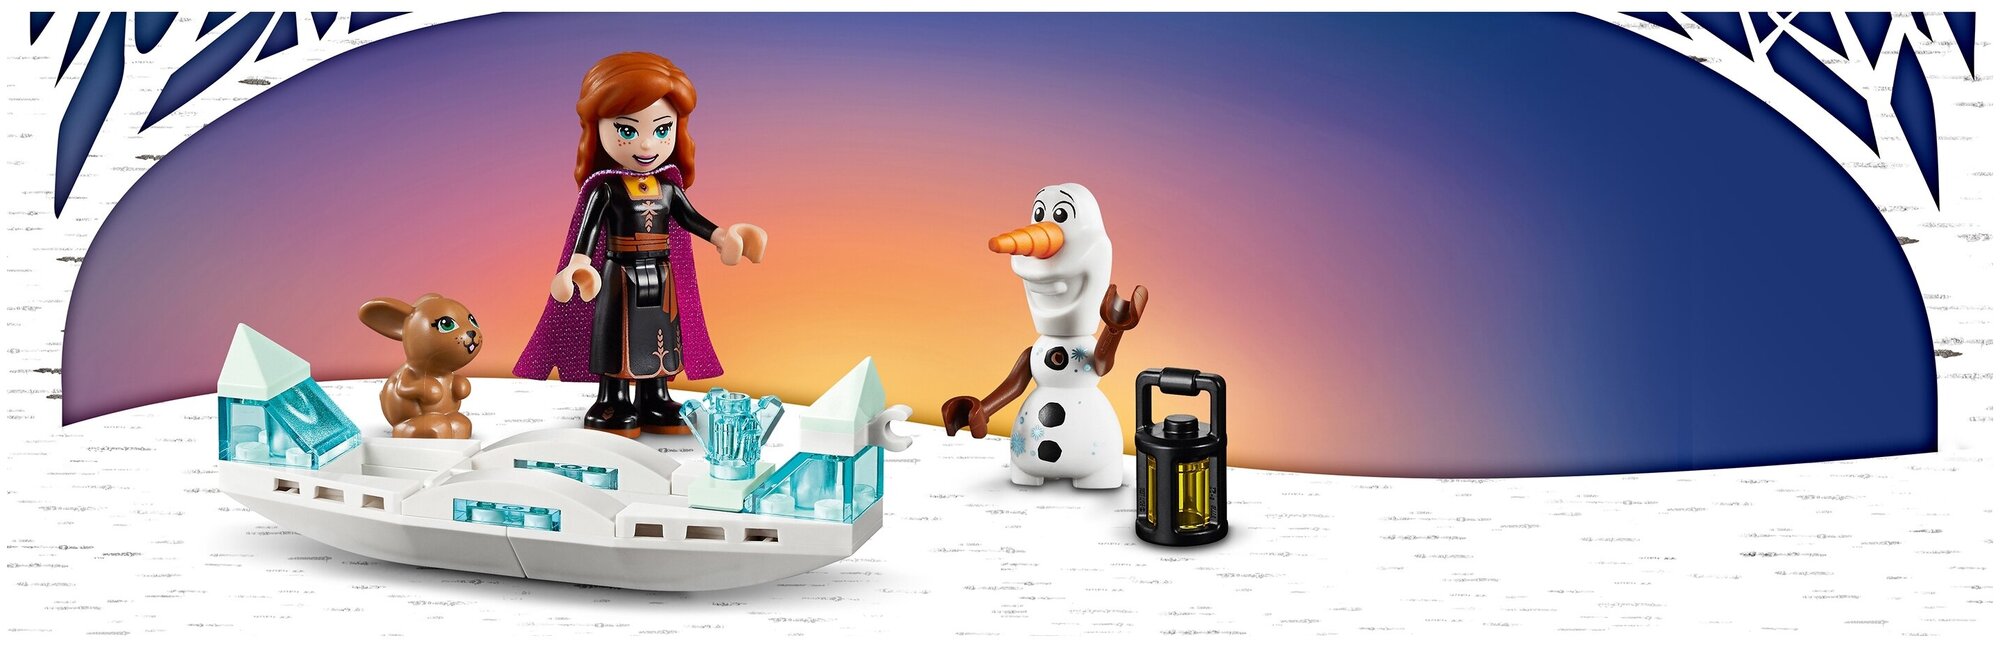 Конструктор LEGO Disney Princess Frozen 2 Экспедиция Анны на каноэ, 108 деталей (41165) - фото №15